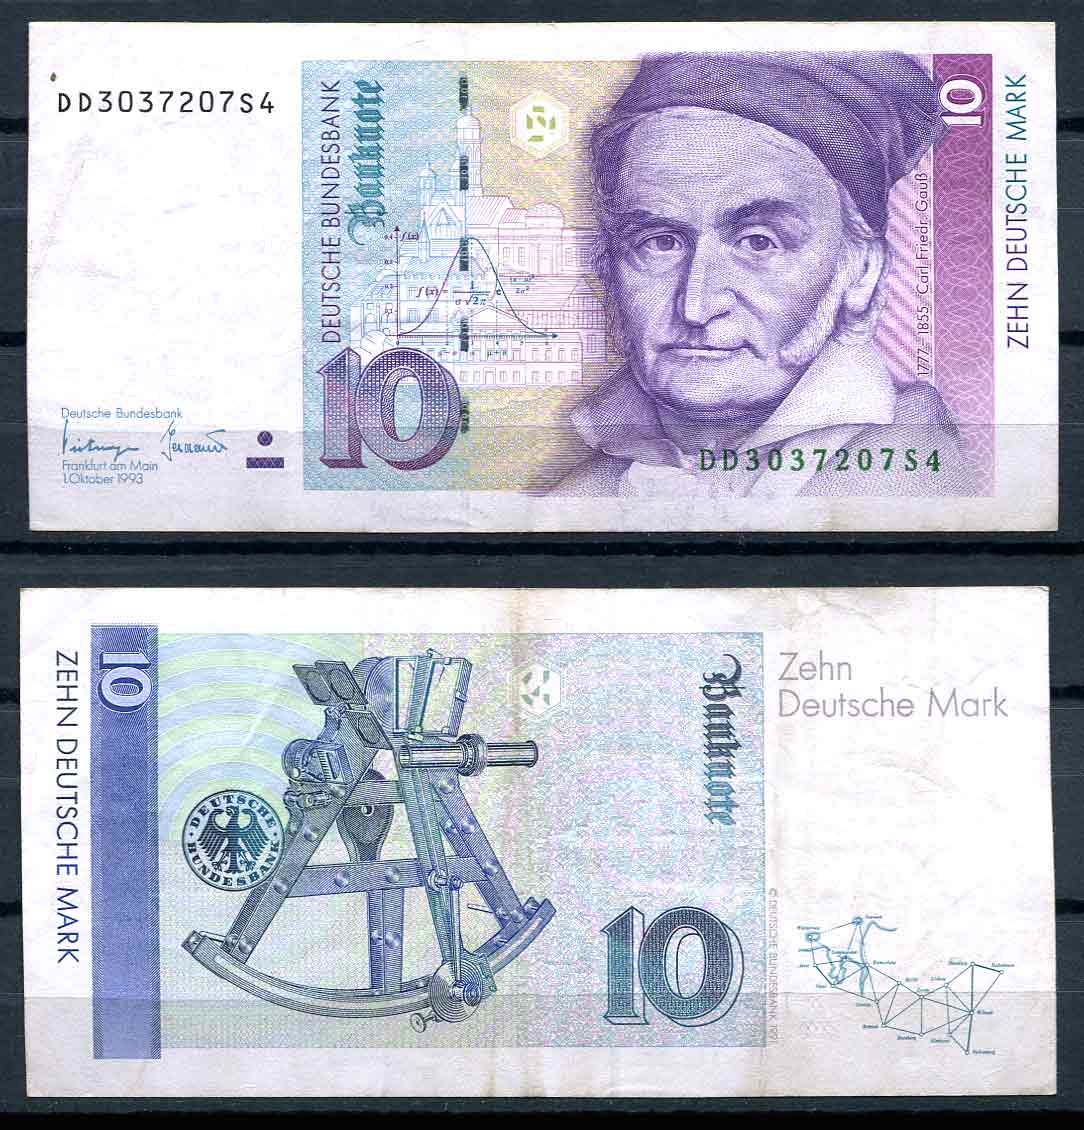 Купюра марка. Валюта Германии марка. Немецкая марка банкноты. Немецкие марки деньги. Современные банкноты Германии.